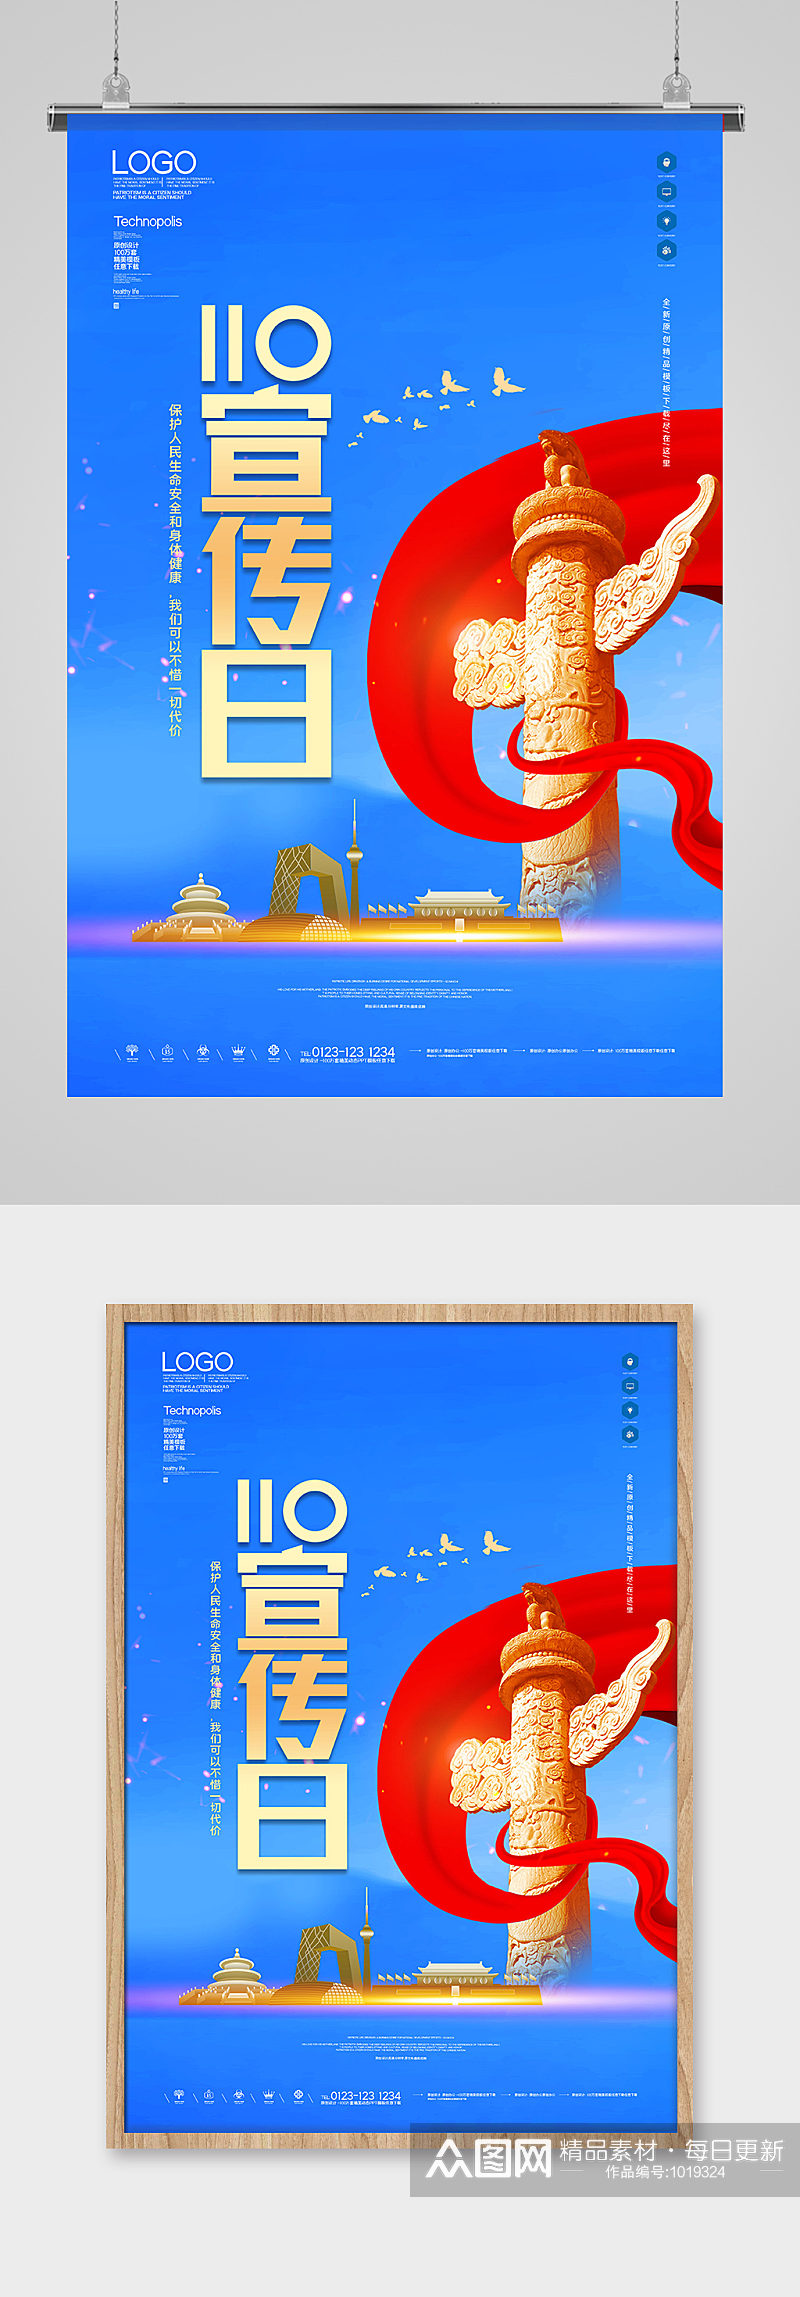 110宣传日海报设计模板素材